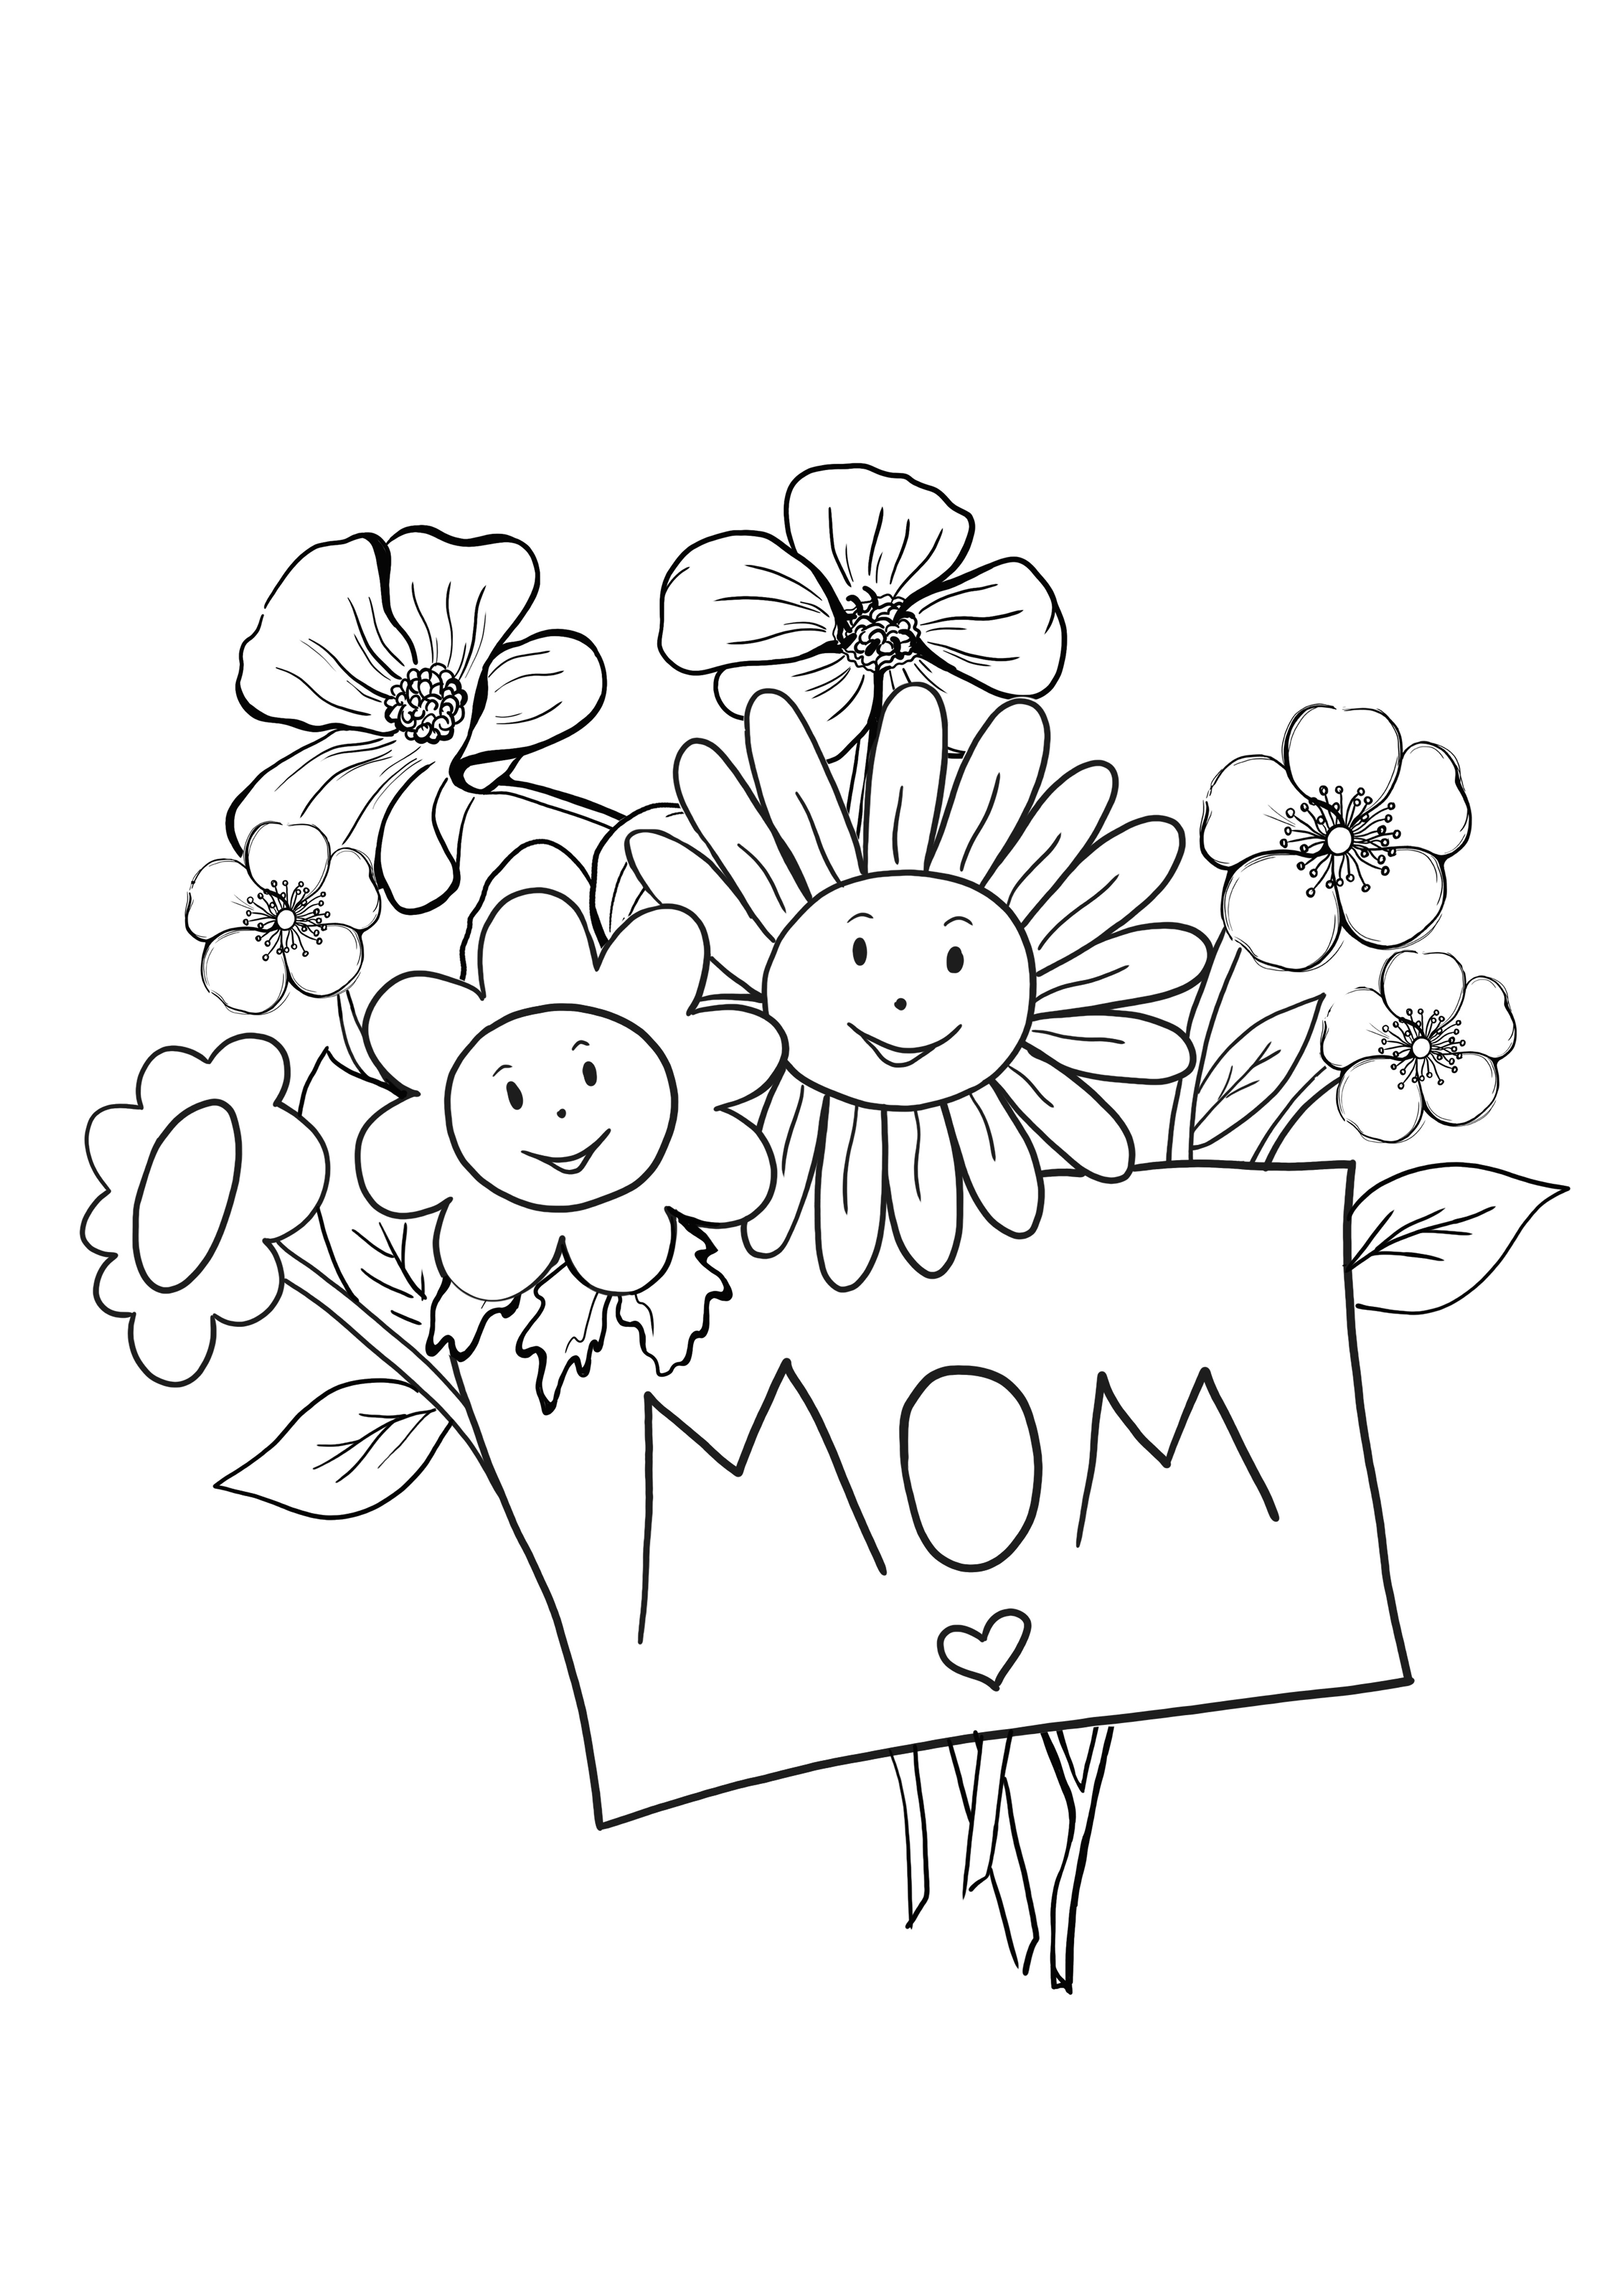 bunga dan ibu untuk diwarnai dan dicetak secara gratis